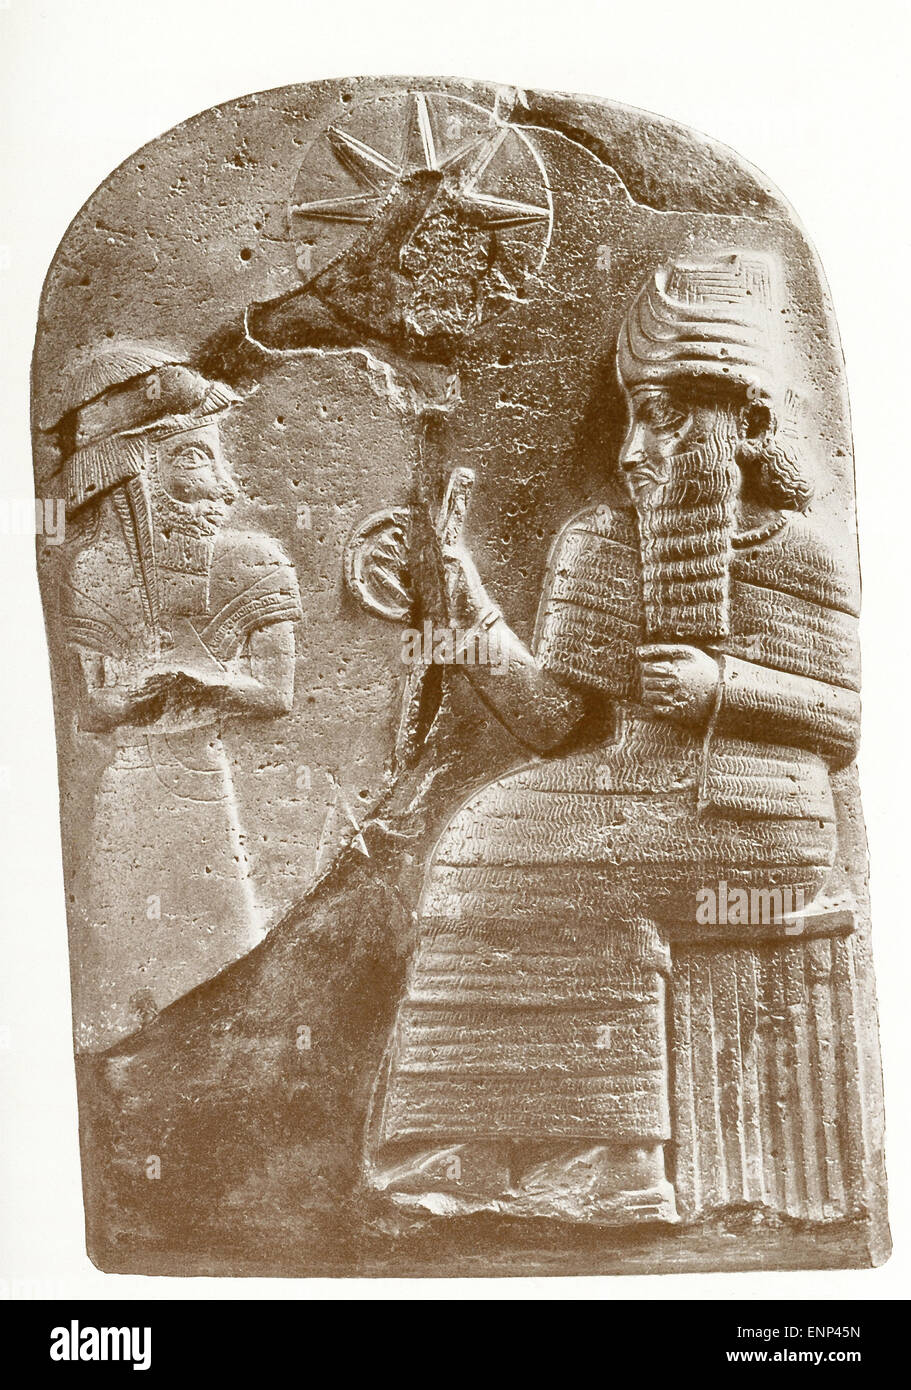 La figura scolpita a sinistra è Hammurabi, in piedi prima di Shamash, il dio del sole e "Signore della sentenza". Il disco al di sopra e tra le due figure rappresenta un disco sun. Hammurabi è stato sovrano di Babilonia dal 1792 al 1750 A.C. ed è noto per la serie di leggi chiamato Hammurabi nel suo codice, uno dei primi scritti i codici di legge, che erano iscritte al di sotto di una scena simile su un nero diorite stele che misurato più di 8 metri in altezza. Foto Stock